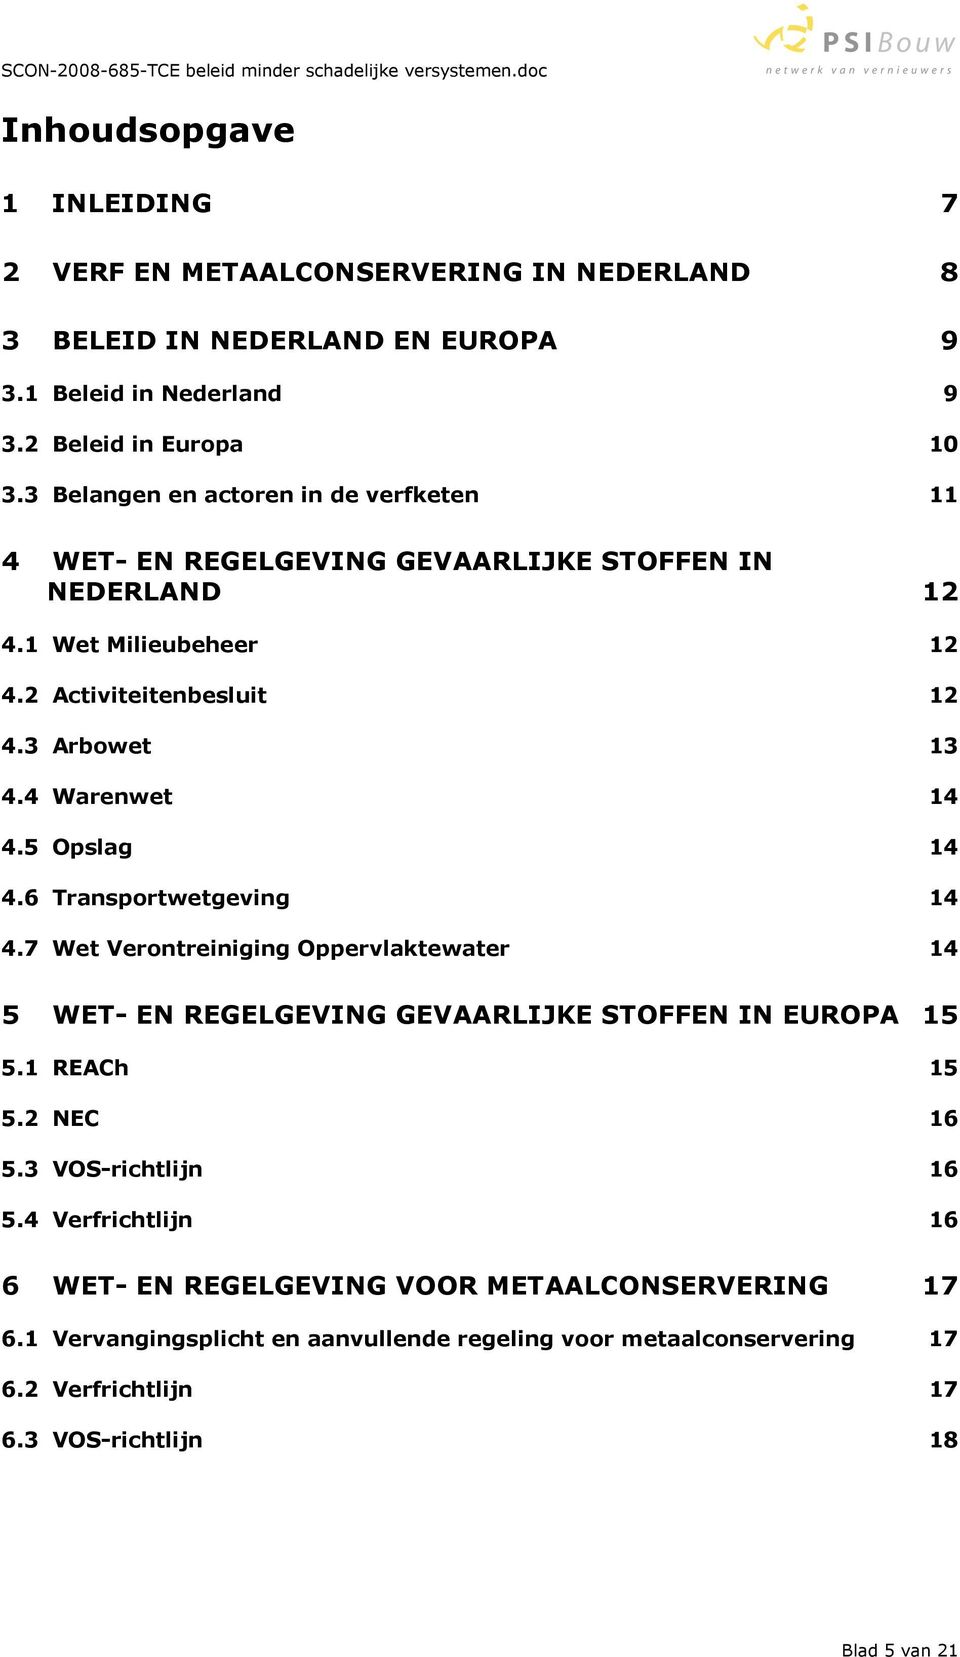 4 Warenwet 14 4.5 Opslag 14 4.6 Transportwetgeving 14 4.7 Wet Verontreiniging Oppervlaktewater 14 5 WET- EN REGELGEVING GEVAARLIJKE STOFFEN IN EUROPA 15 5.1 REACh 15 5.2 NEC 16 5.